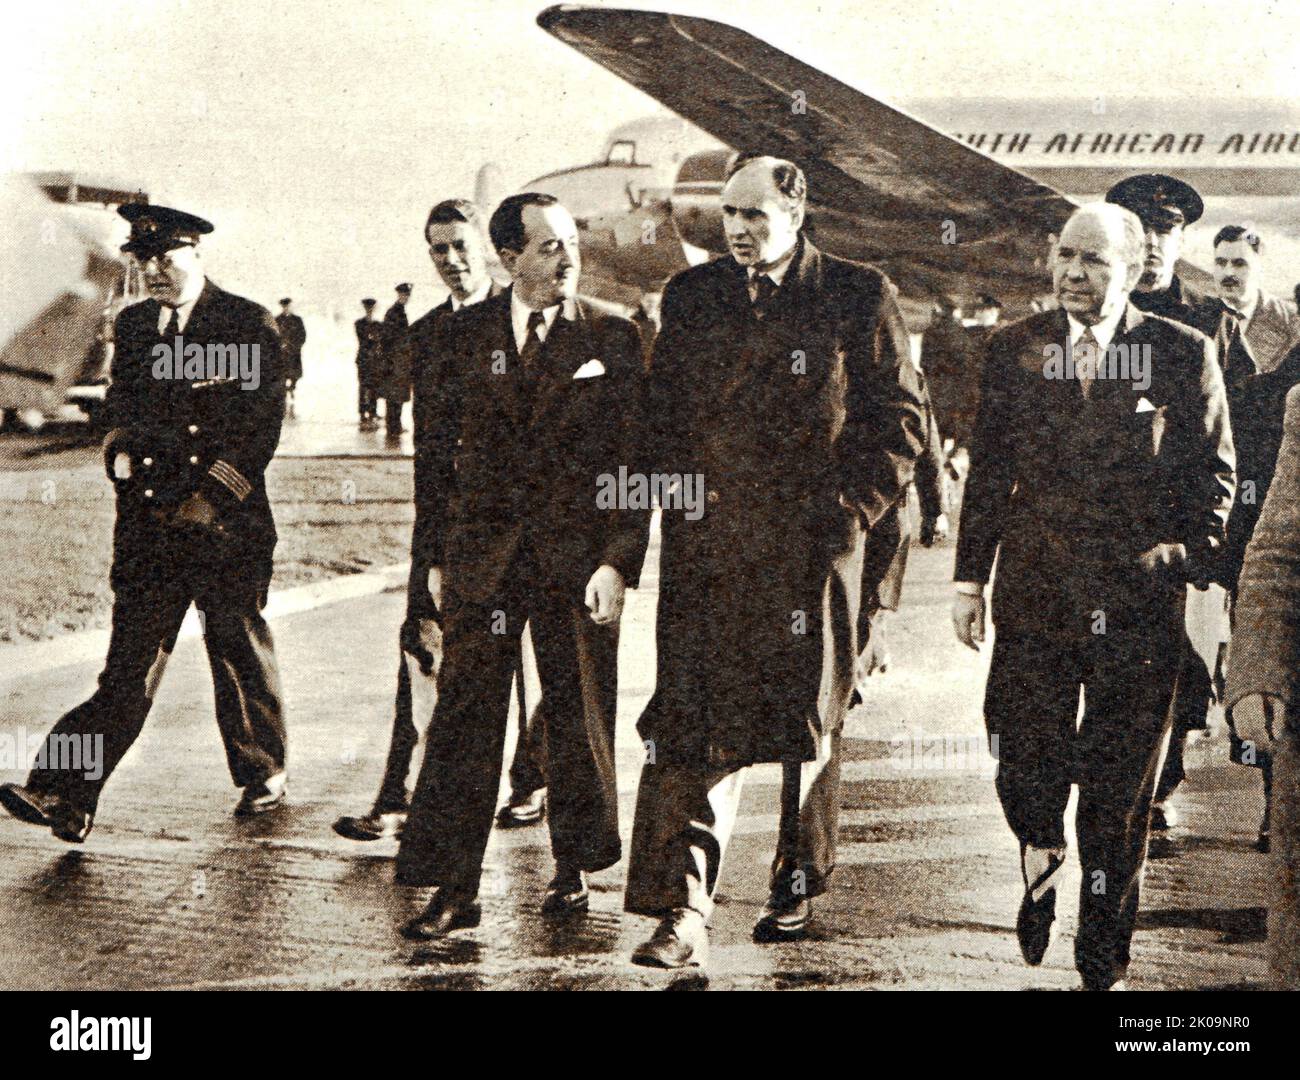 Evelyn John St Loe Strachey, Ministra de Alimentación, llegando al aeropuerto de Londres desde África Oriental. Evelyn John St Loe Strachey (21 de octubre de 1901 - 15 de julio de 1963) fue una política y escritora laborista británica. Strachey, periodista de profesión, fue elegido miembro del Parlamento en 1929. Strachey perdió su escaño en 1931, fue simpatizante comunista por el resto de la década de 1930s y rompió con el Partido Comunista en 1940. Durante la Segunda Guerra Mundial, Strachey sirvió como oficial de la Real Fuerza Aérea en la planificación y las relaciones públicas. Fue elegido una vez más al Parlamento como diputado laborista en 1945 y ocupó el cargo bajo Cl Foto de stock